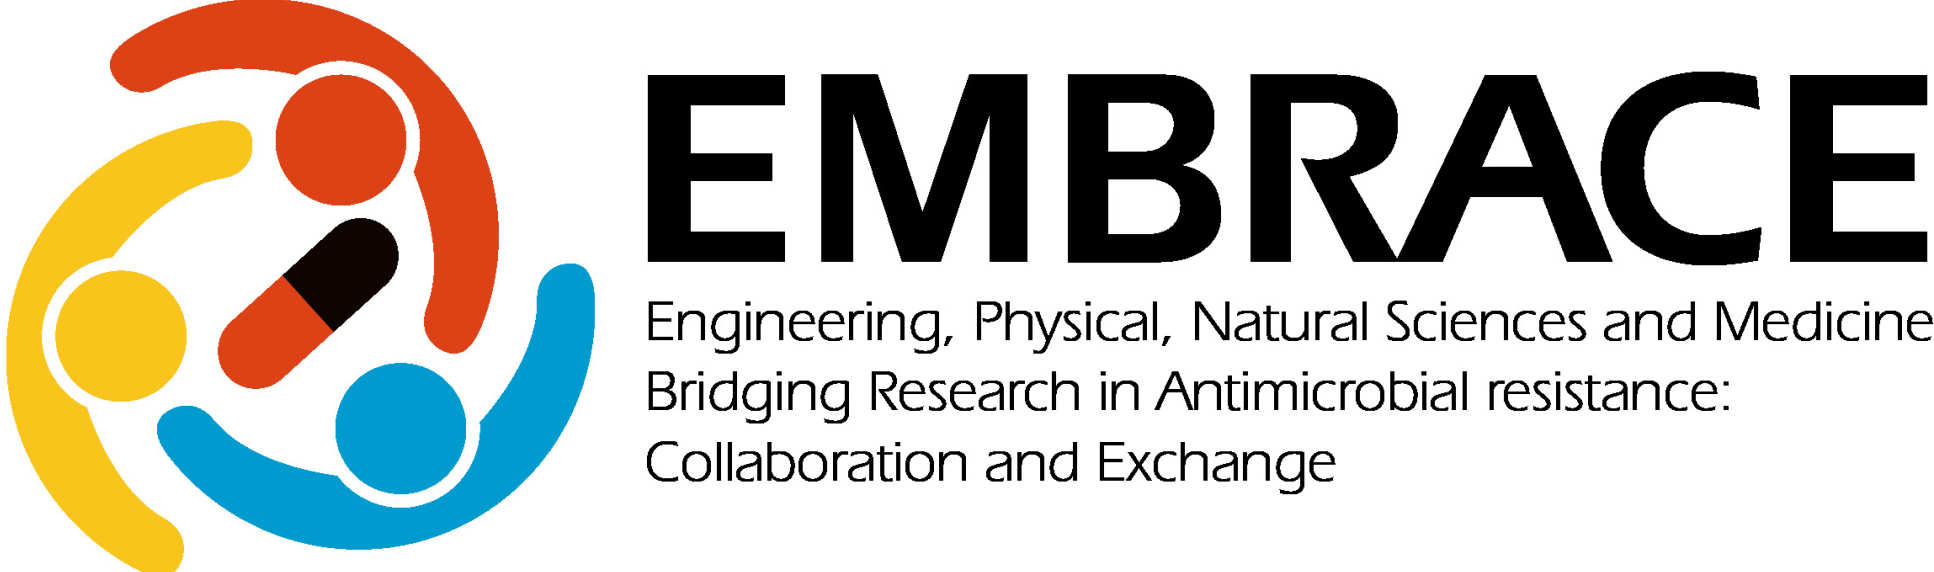 EMBRACE_logo